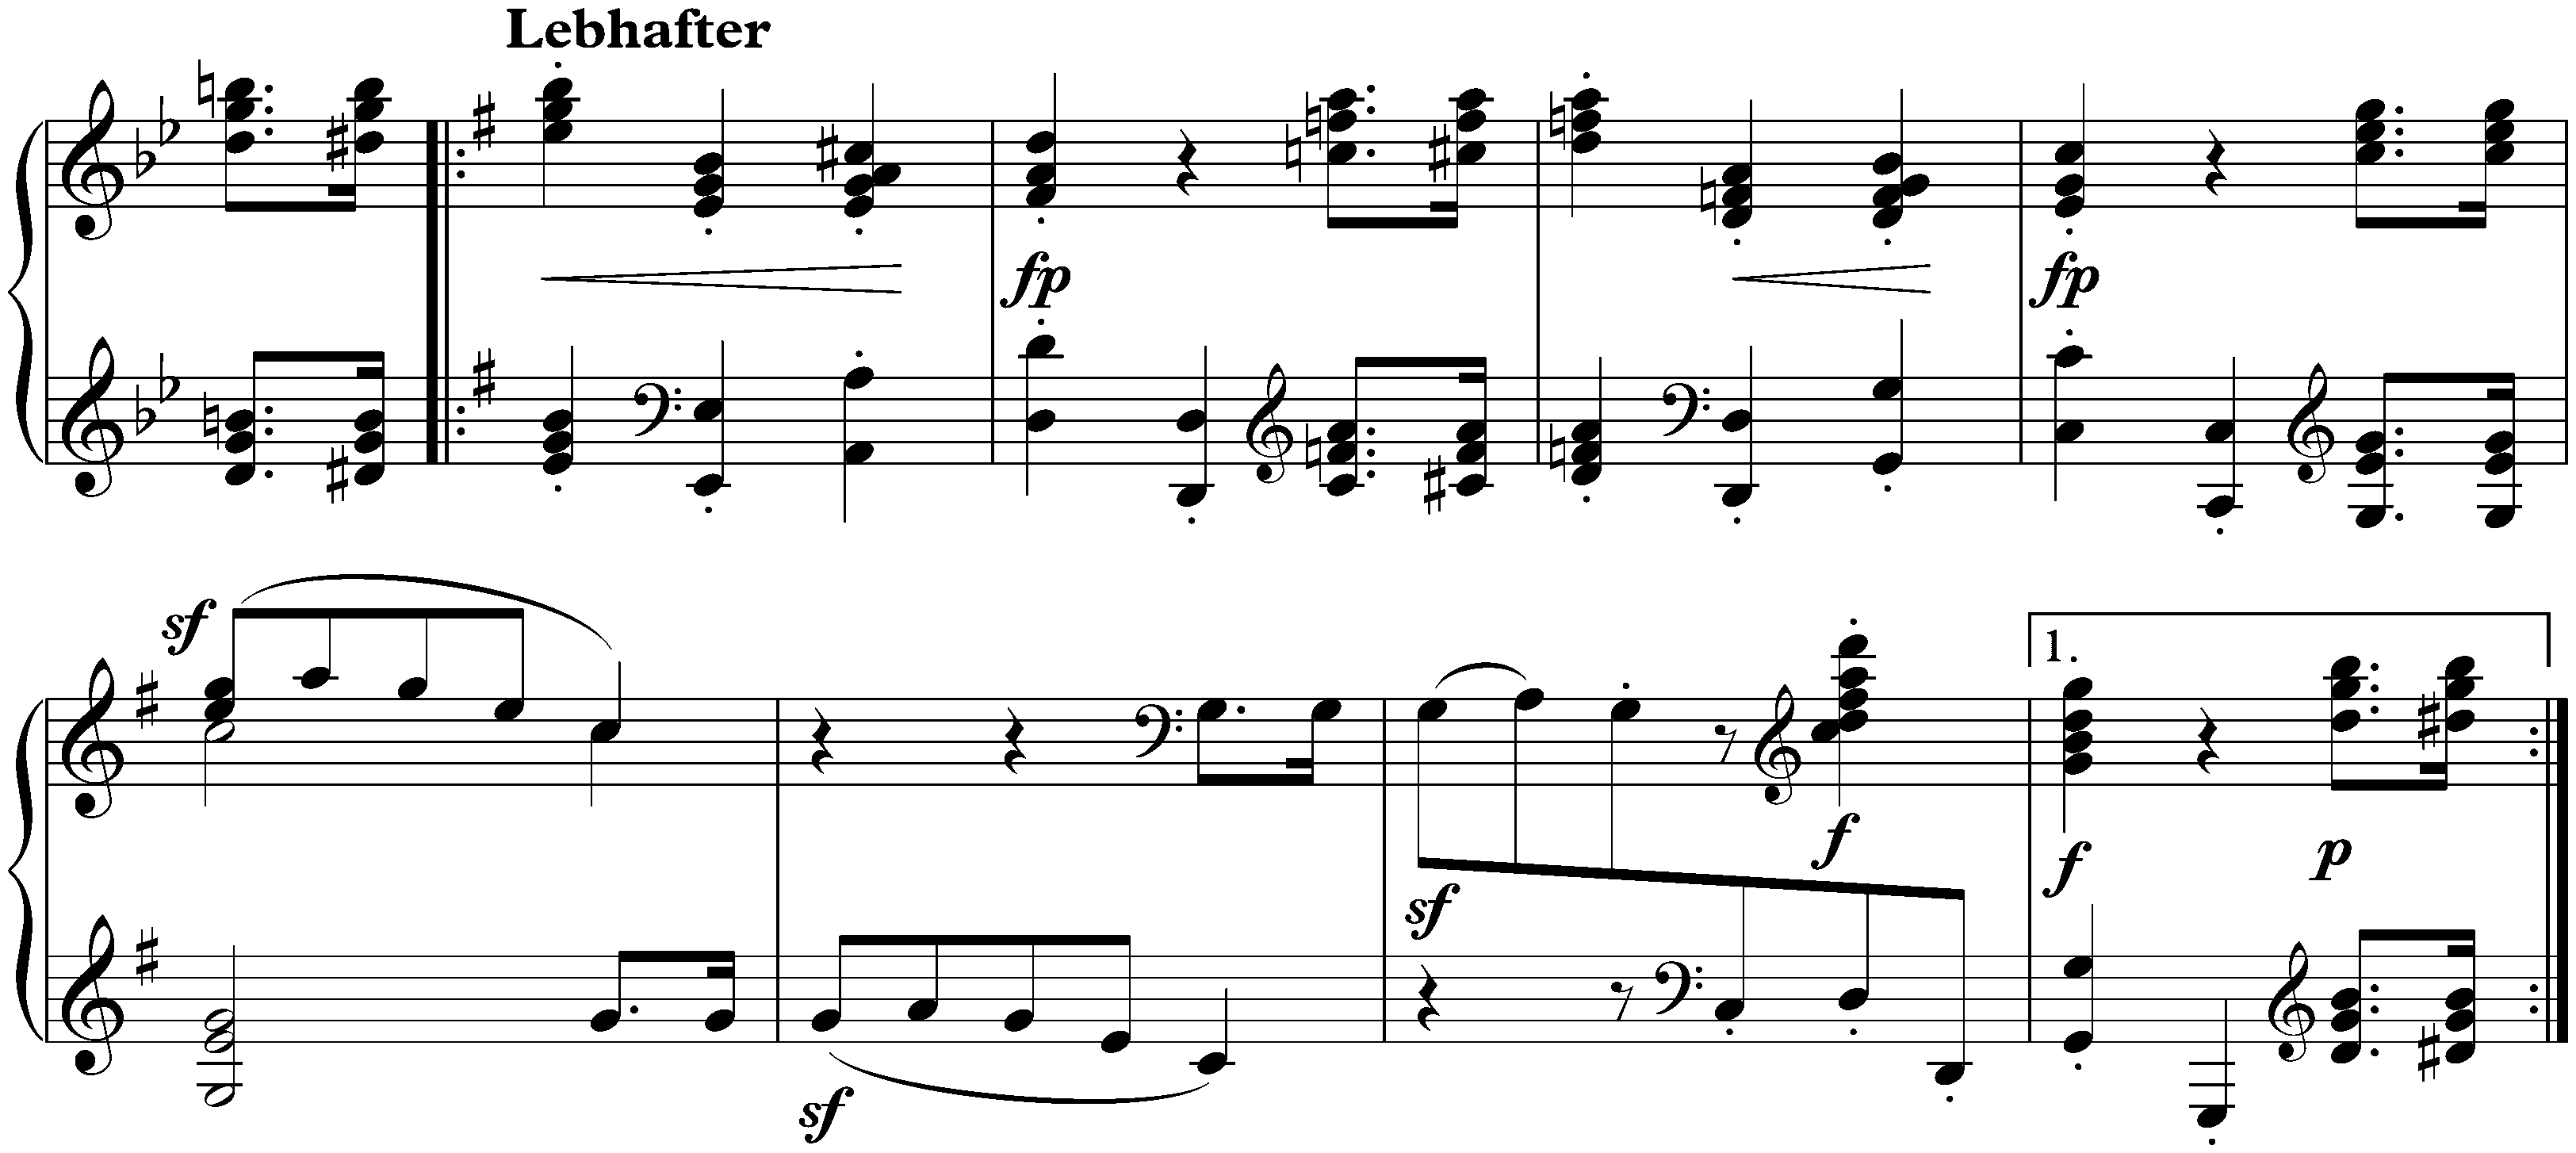 Bunte Blätter, op. 99; 13. Scherzo